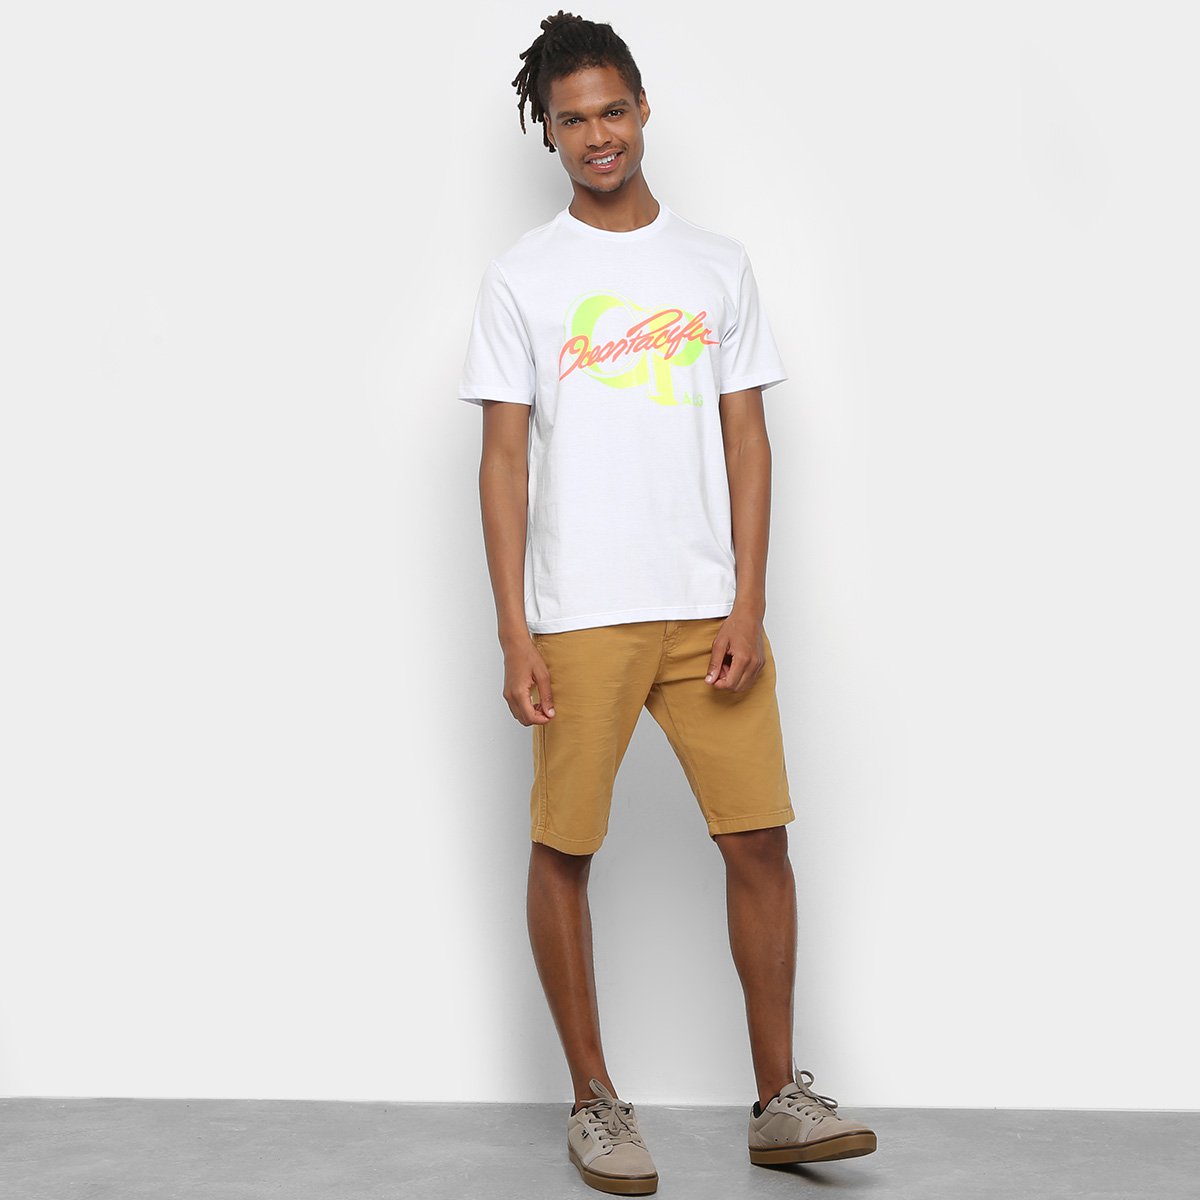 Camiseta Op+Alg Ocean Pacific Signature Masculina